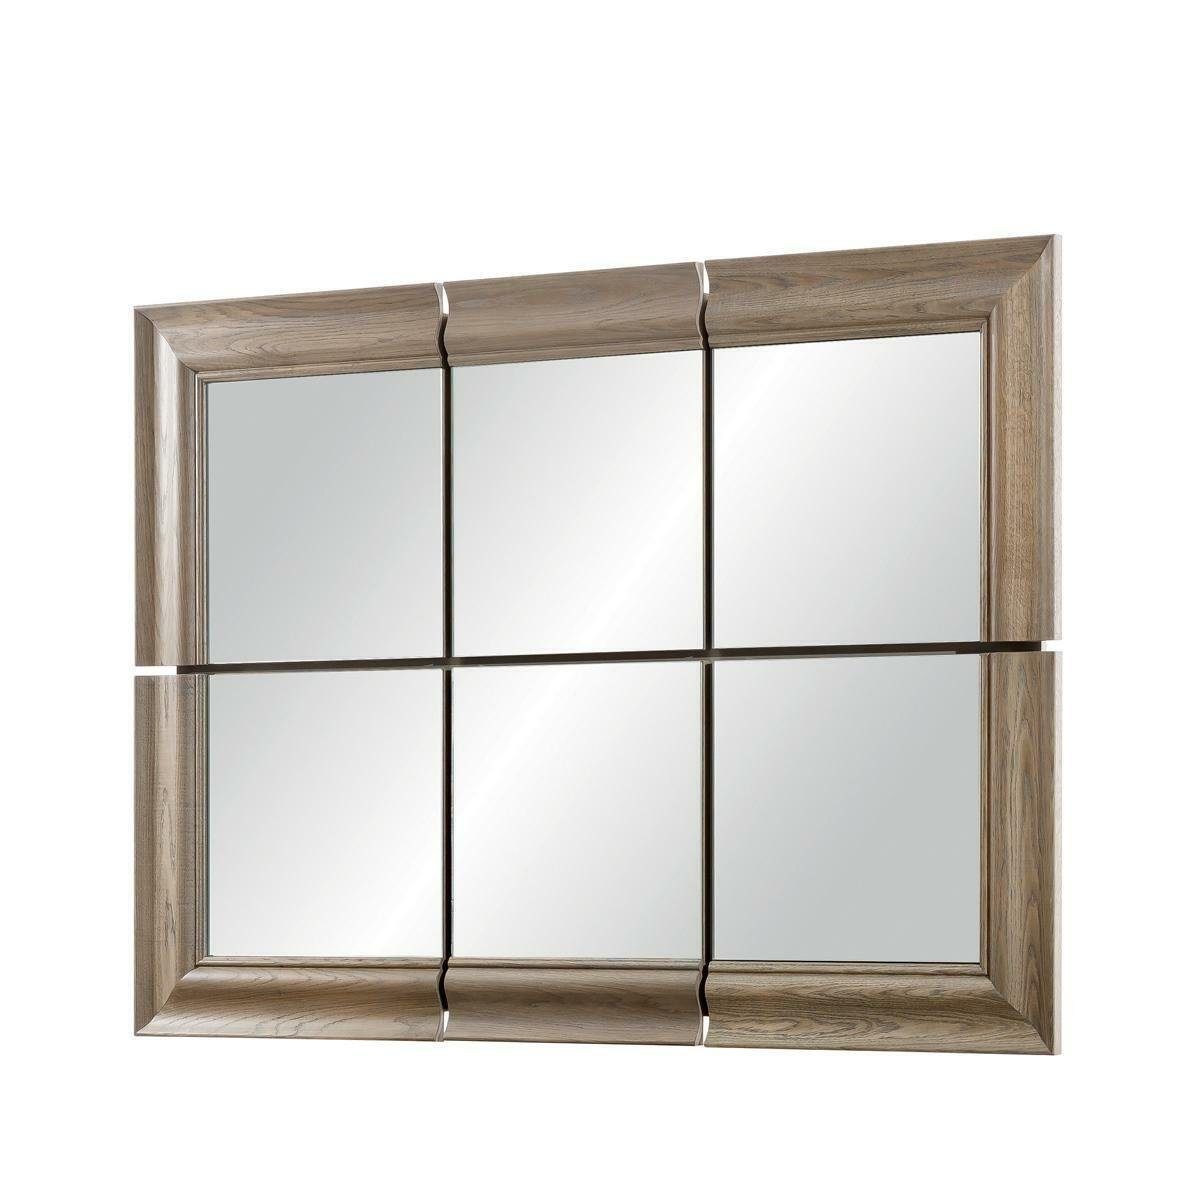 JVmoebel Wandspiegel Moderner Großer Spiegel Wandspiegel Rahmen Hängespiegel Echt Holz